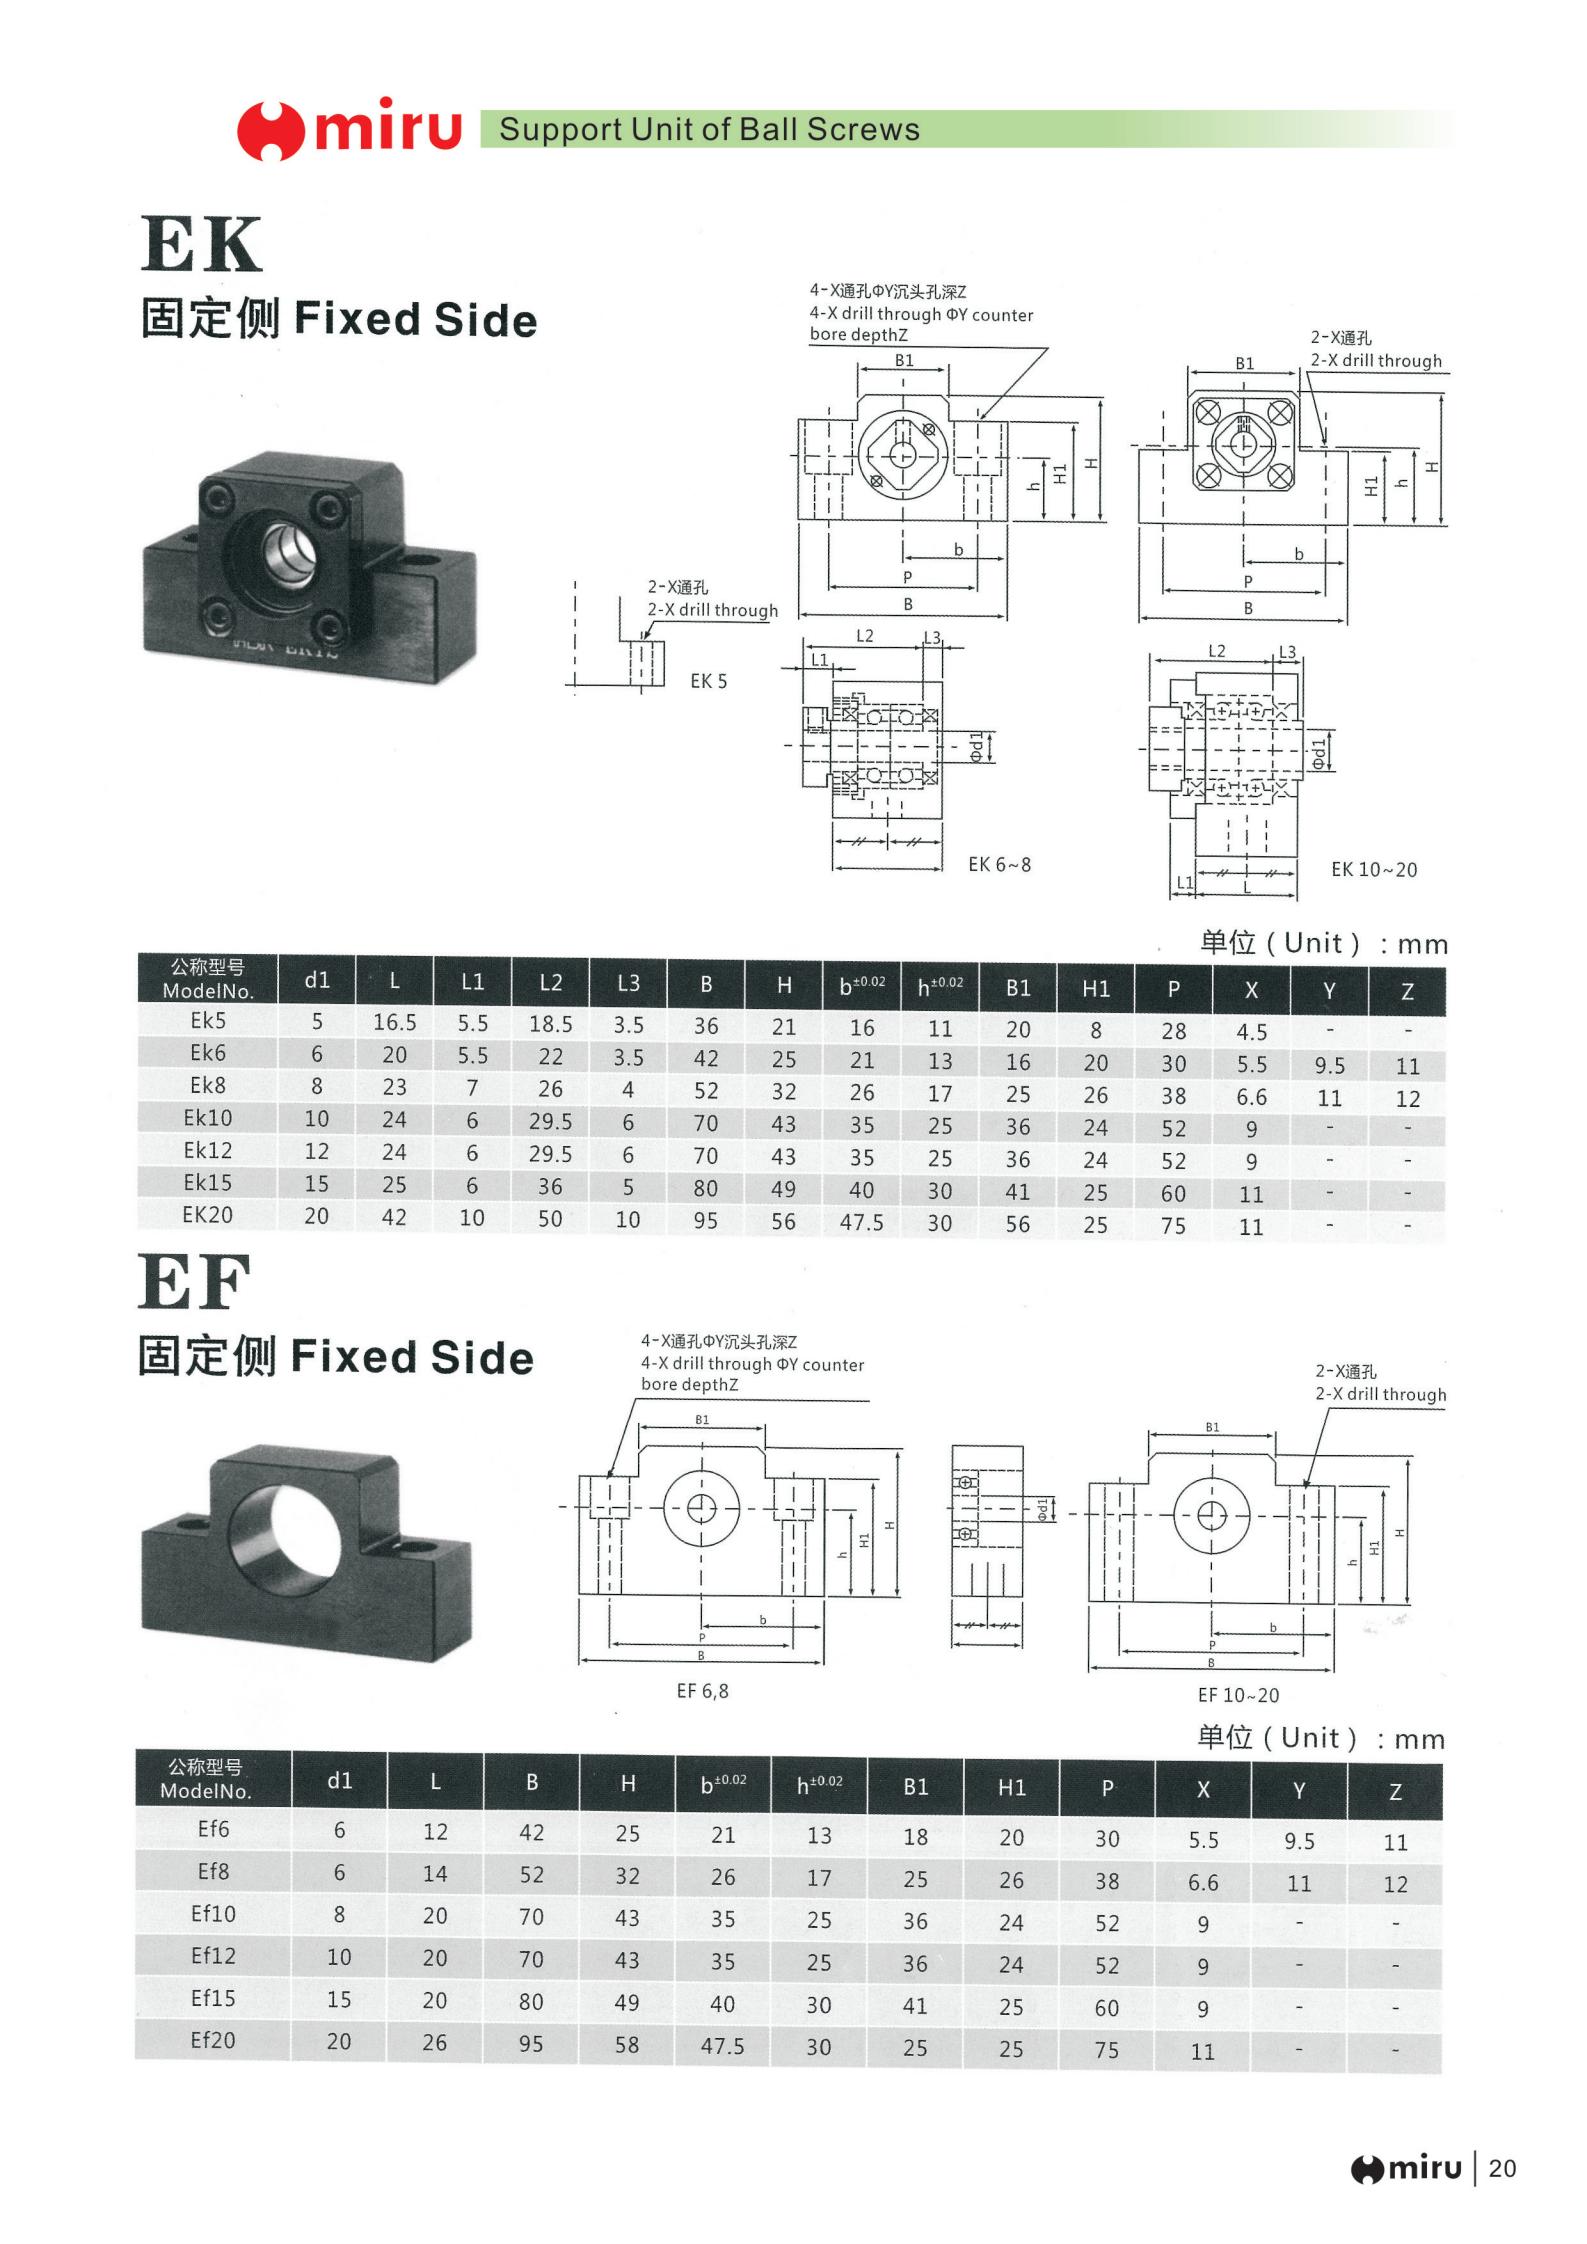 EK5 | 
EK6 | 
EK8 | 
EK10 | 
EK12 | 
EK15 | 
EK20 | 
EF6 | 
EF8 | 
EF10 | 
EF12 | 
EF15 | 
EF20 | 